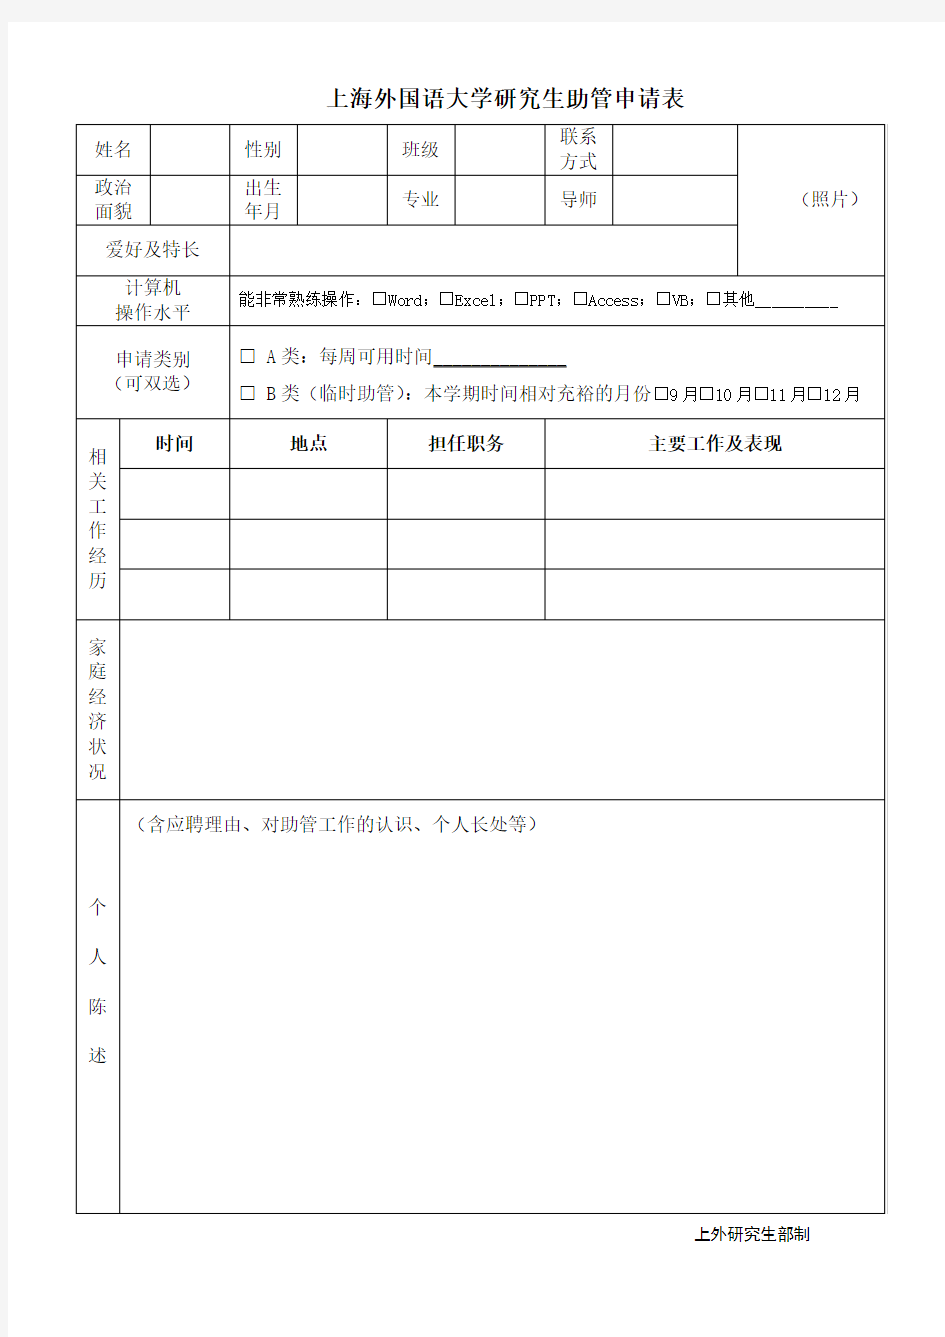 上海外国语大学 研究生助管申请表